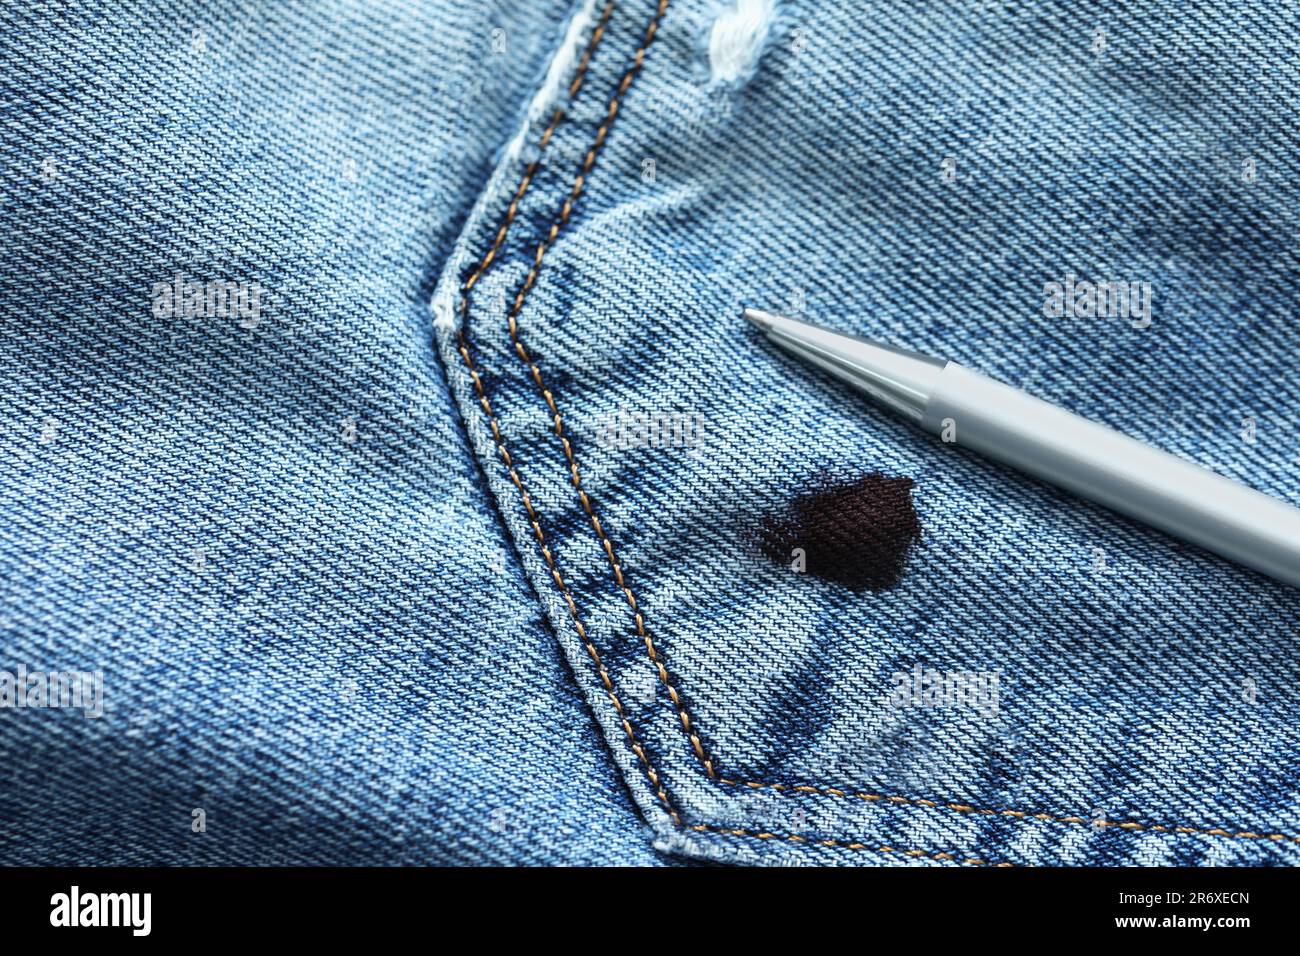 Stift und Fleck mit schwarzer Tinte auf Jeans, Draufsicht. Platz für Text  Stockfotografie - Alamy